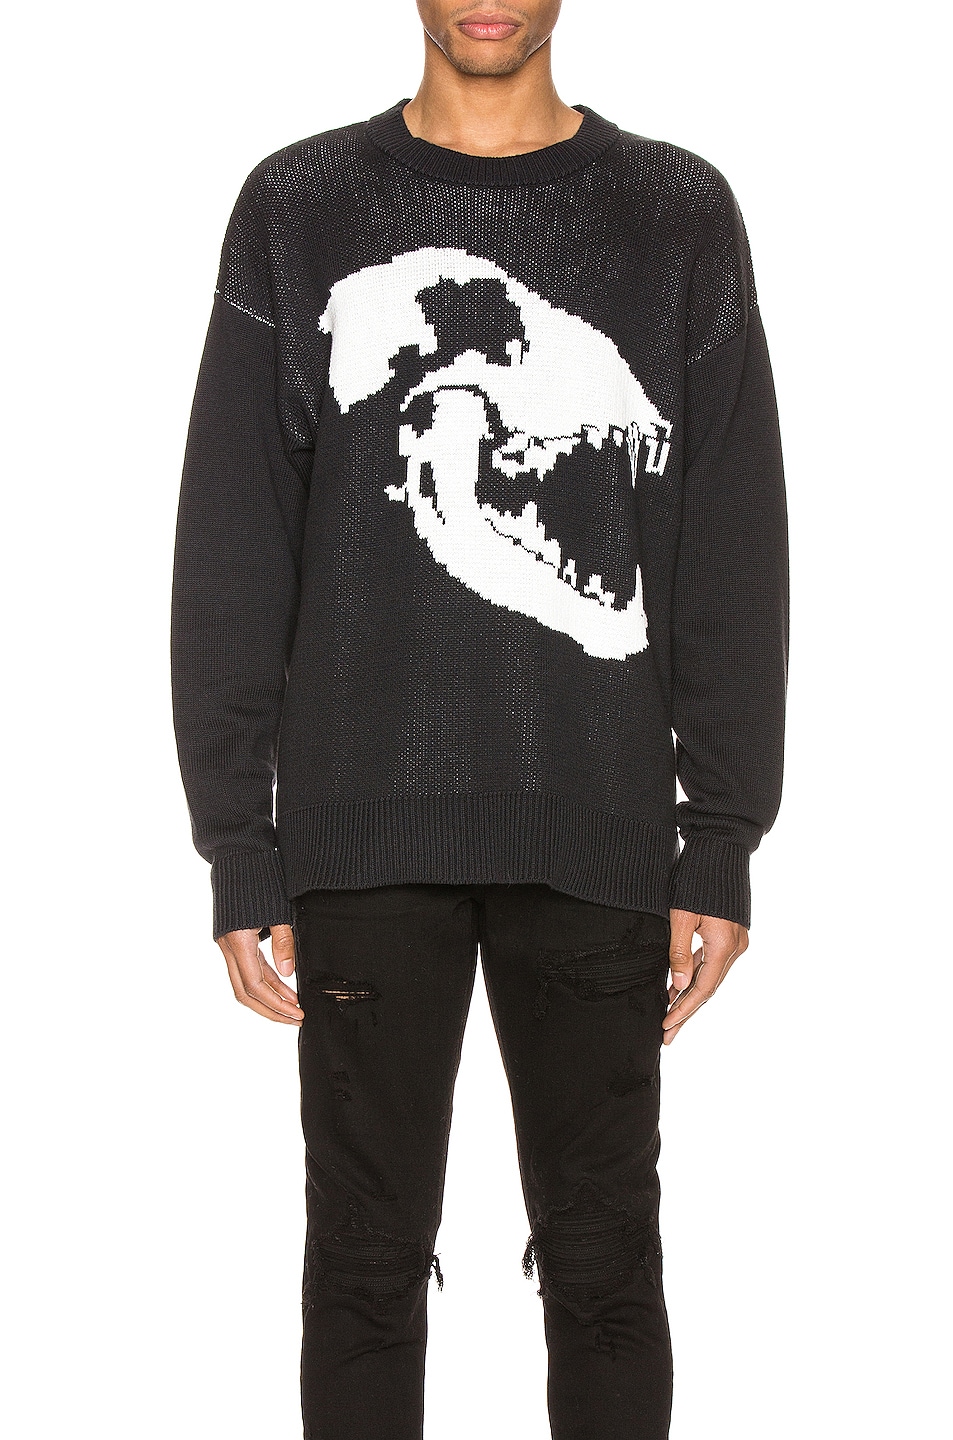 Image 1 of Keiser Clark Canine Skull Sweater in Black & White